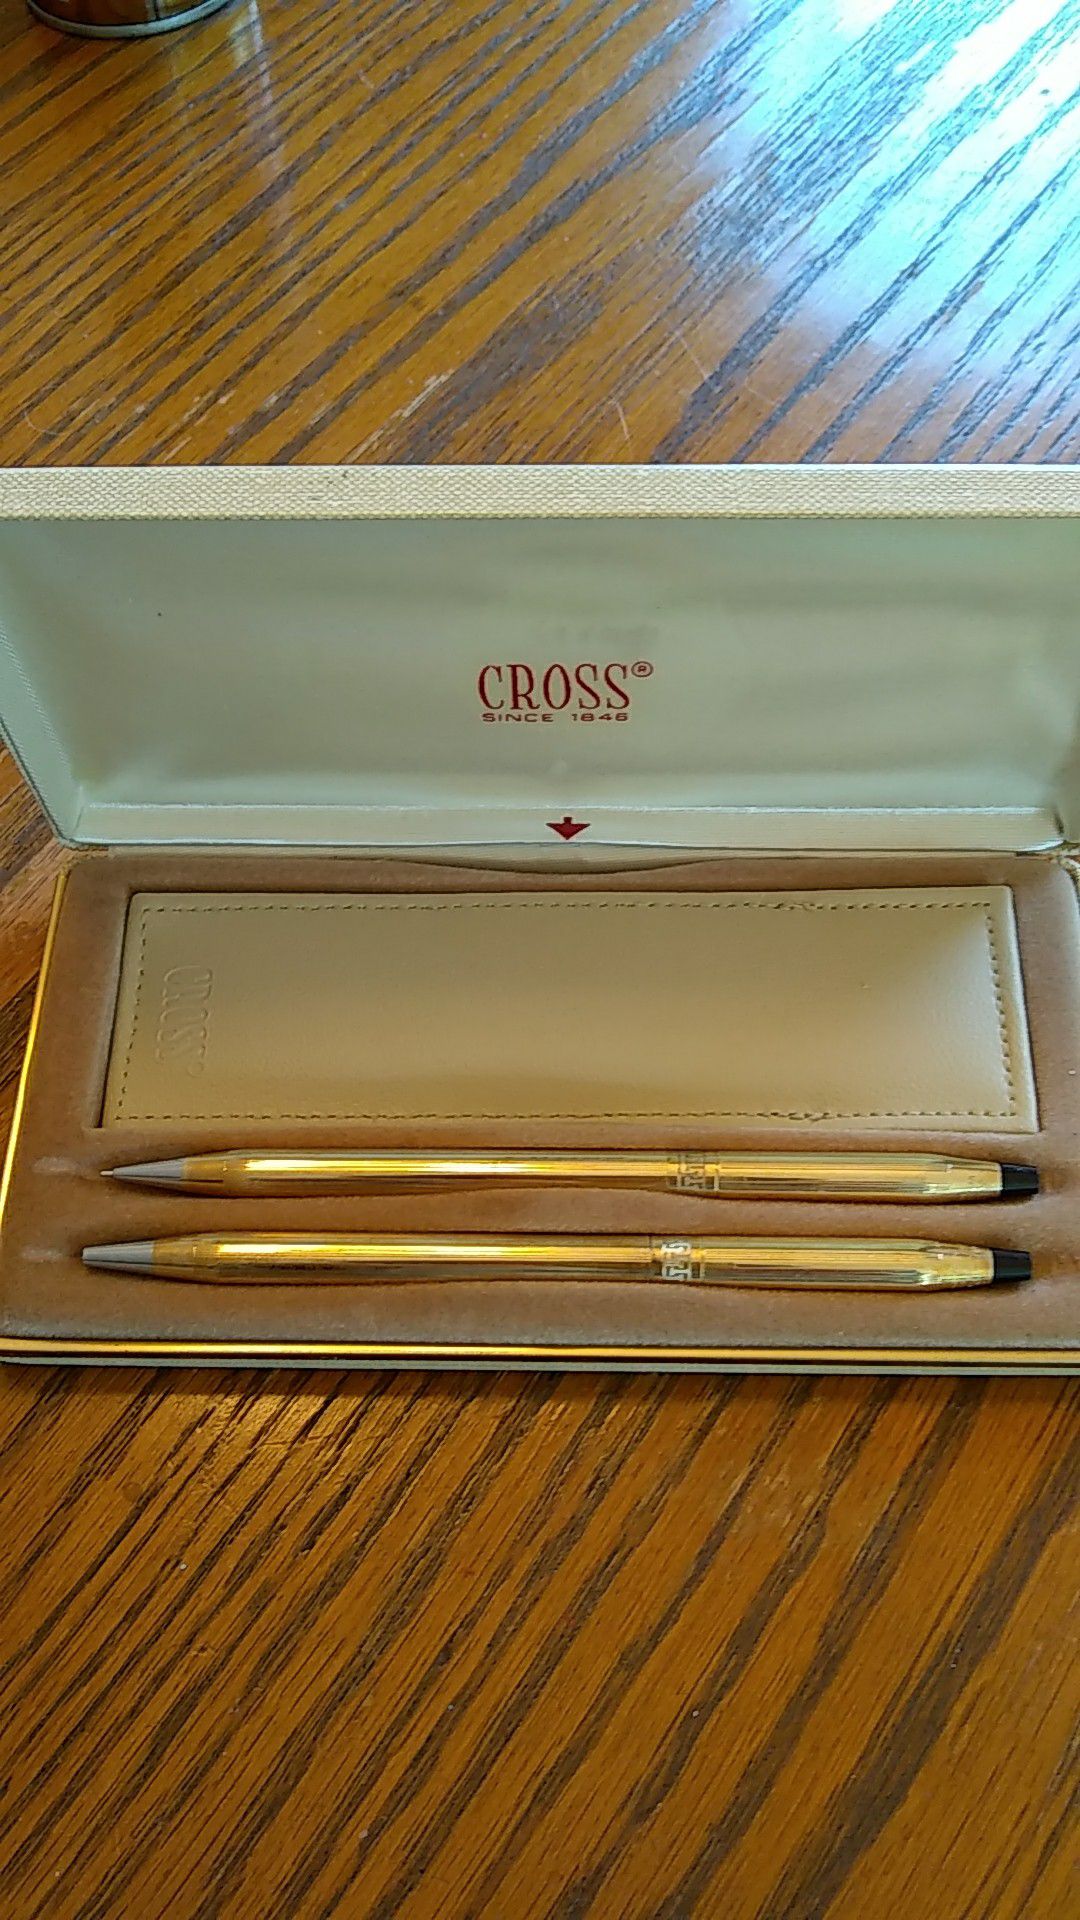 Cross Pen and Pencil Set**Vintage**